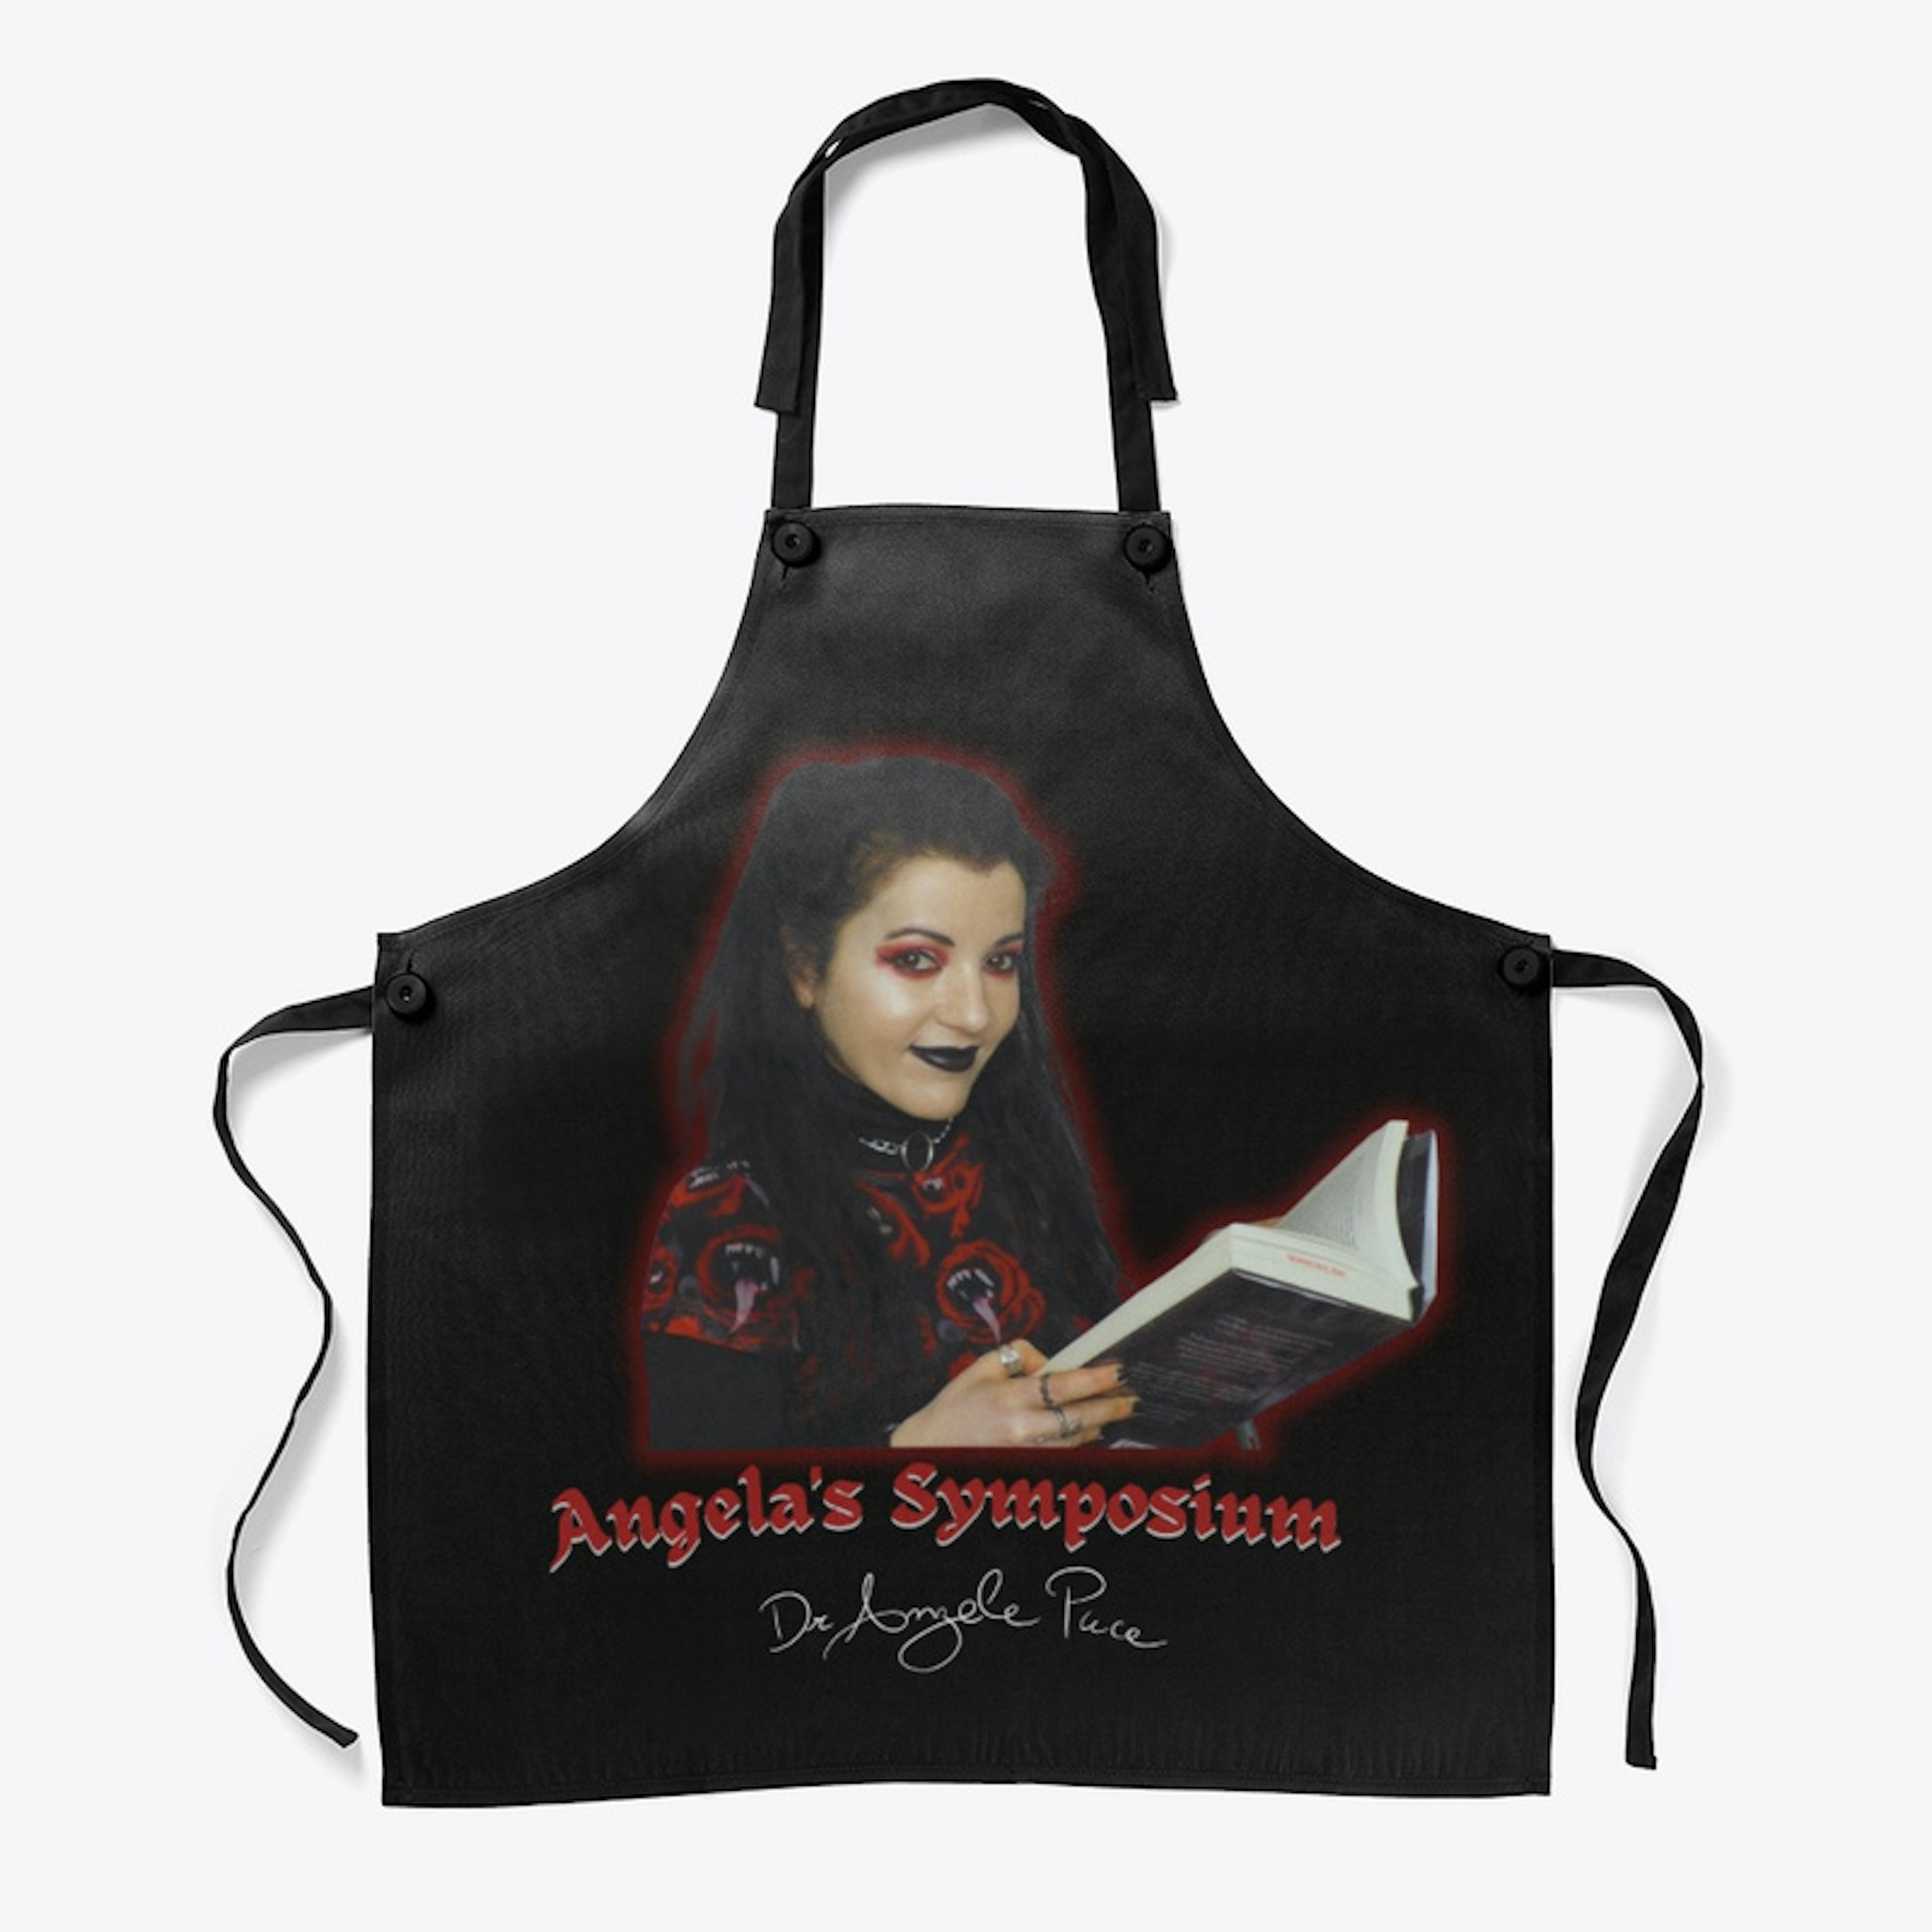 Angela's Symposium Merchandise